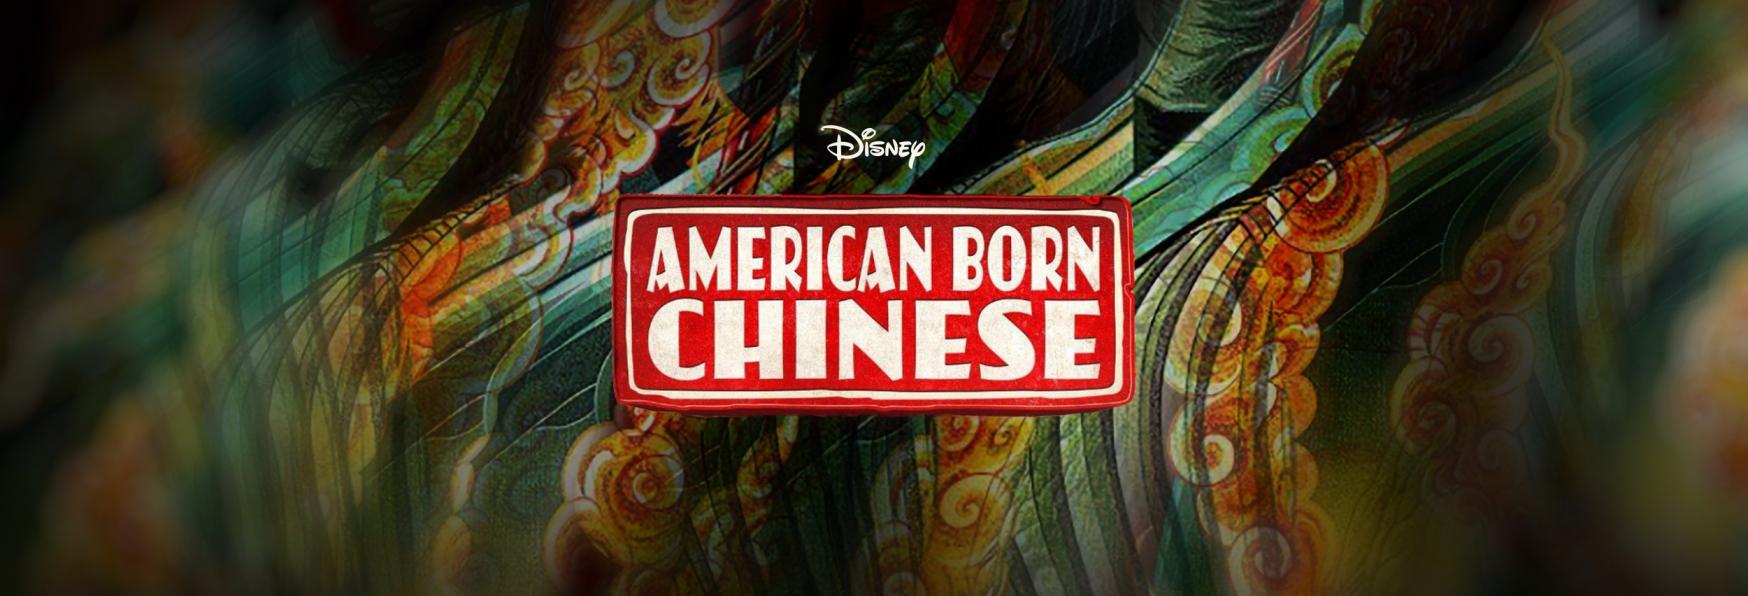 American Born Chinese: Trama, Cast, Trailer e Data di Uscita della Serie TV Adattamento di Disney+